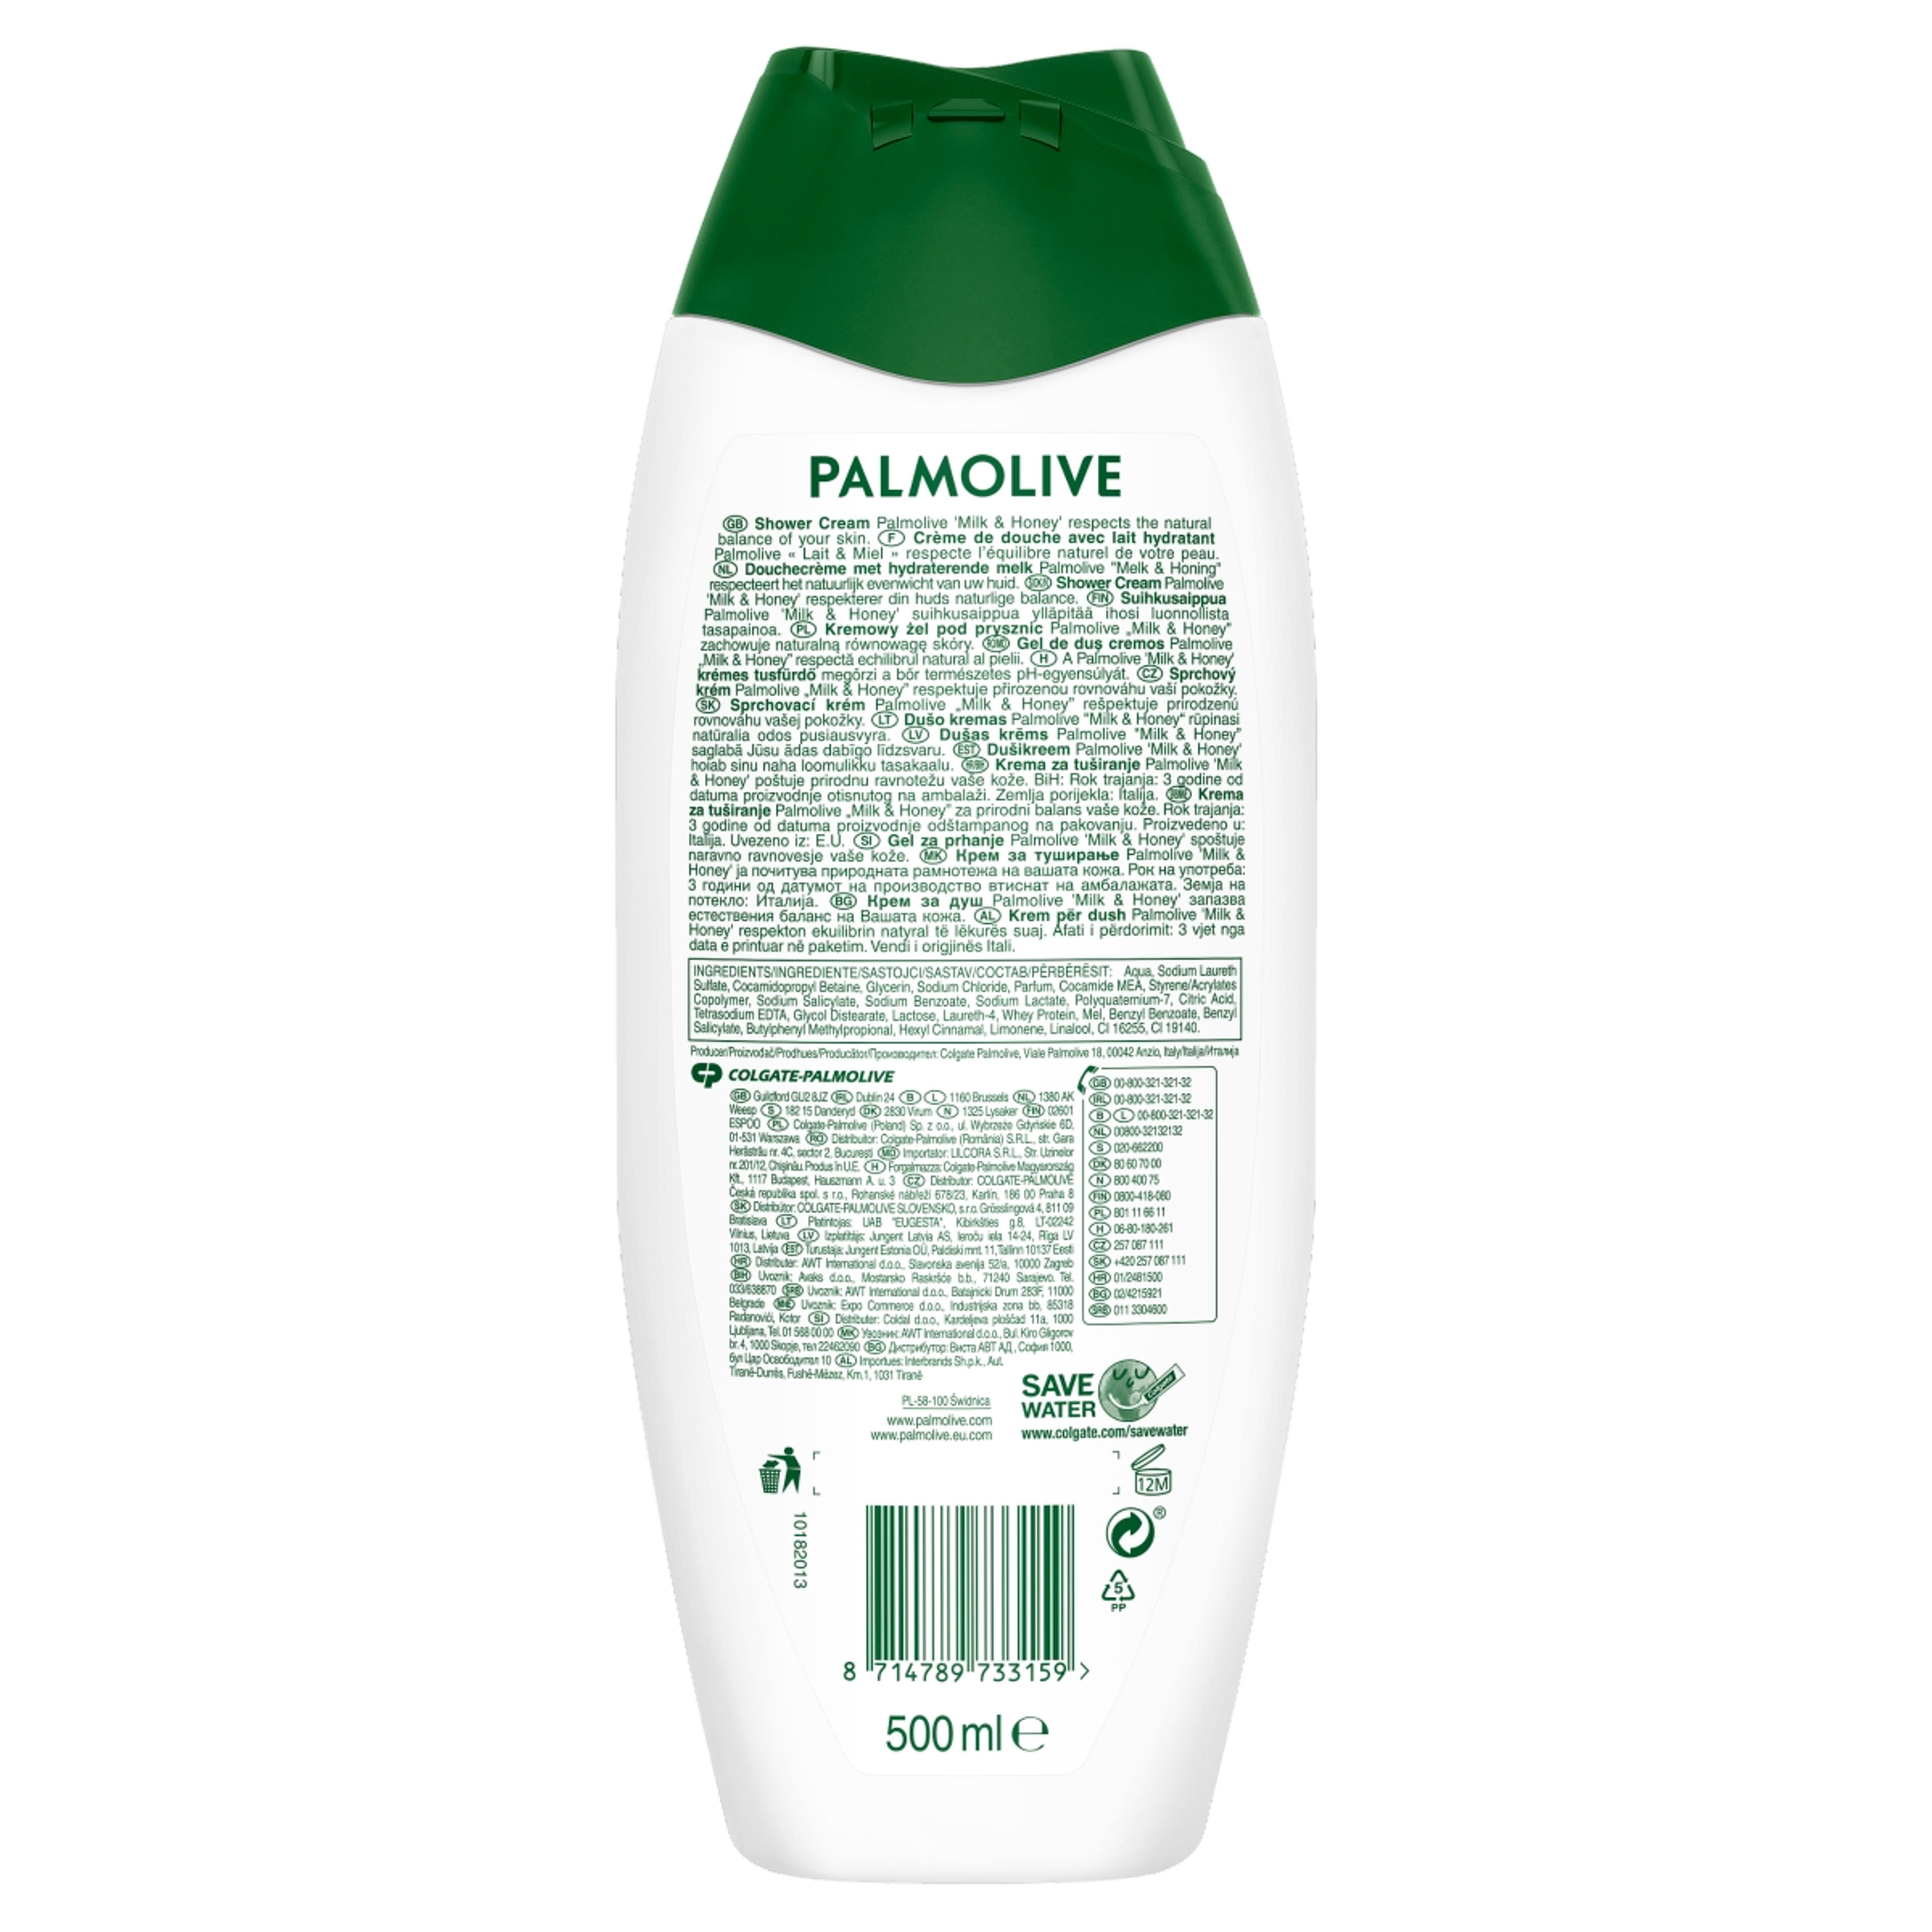 Palmolive Naturals Milk & Honey tusfürdő - 500 ml-3